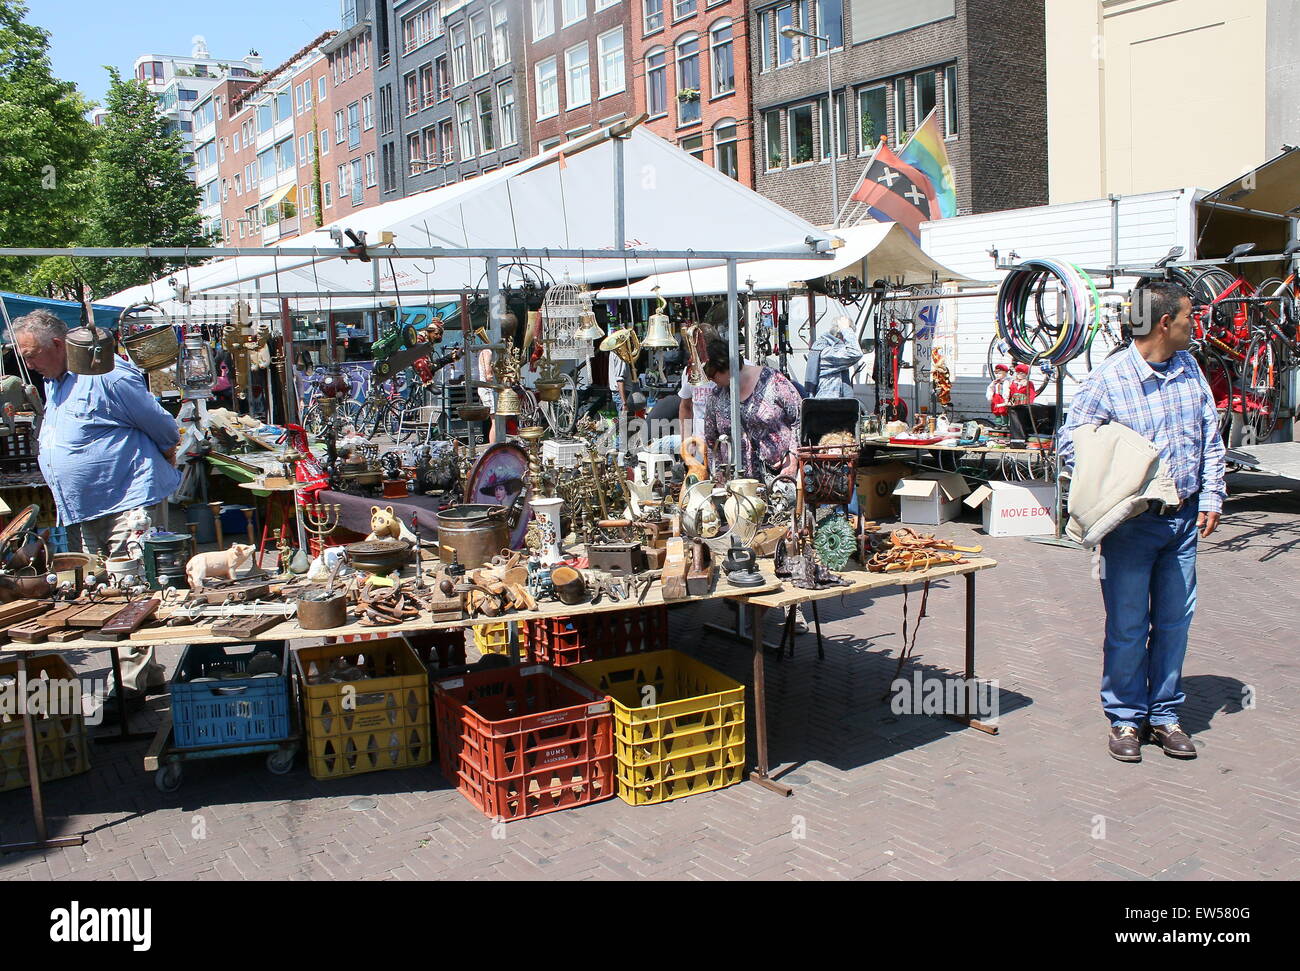 El mercado y los vendedores ambulantes en la plaza Waterlooplein, Ámsterdam, Países Bajos. Foto de stock